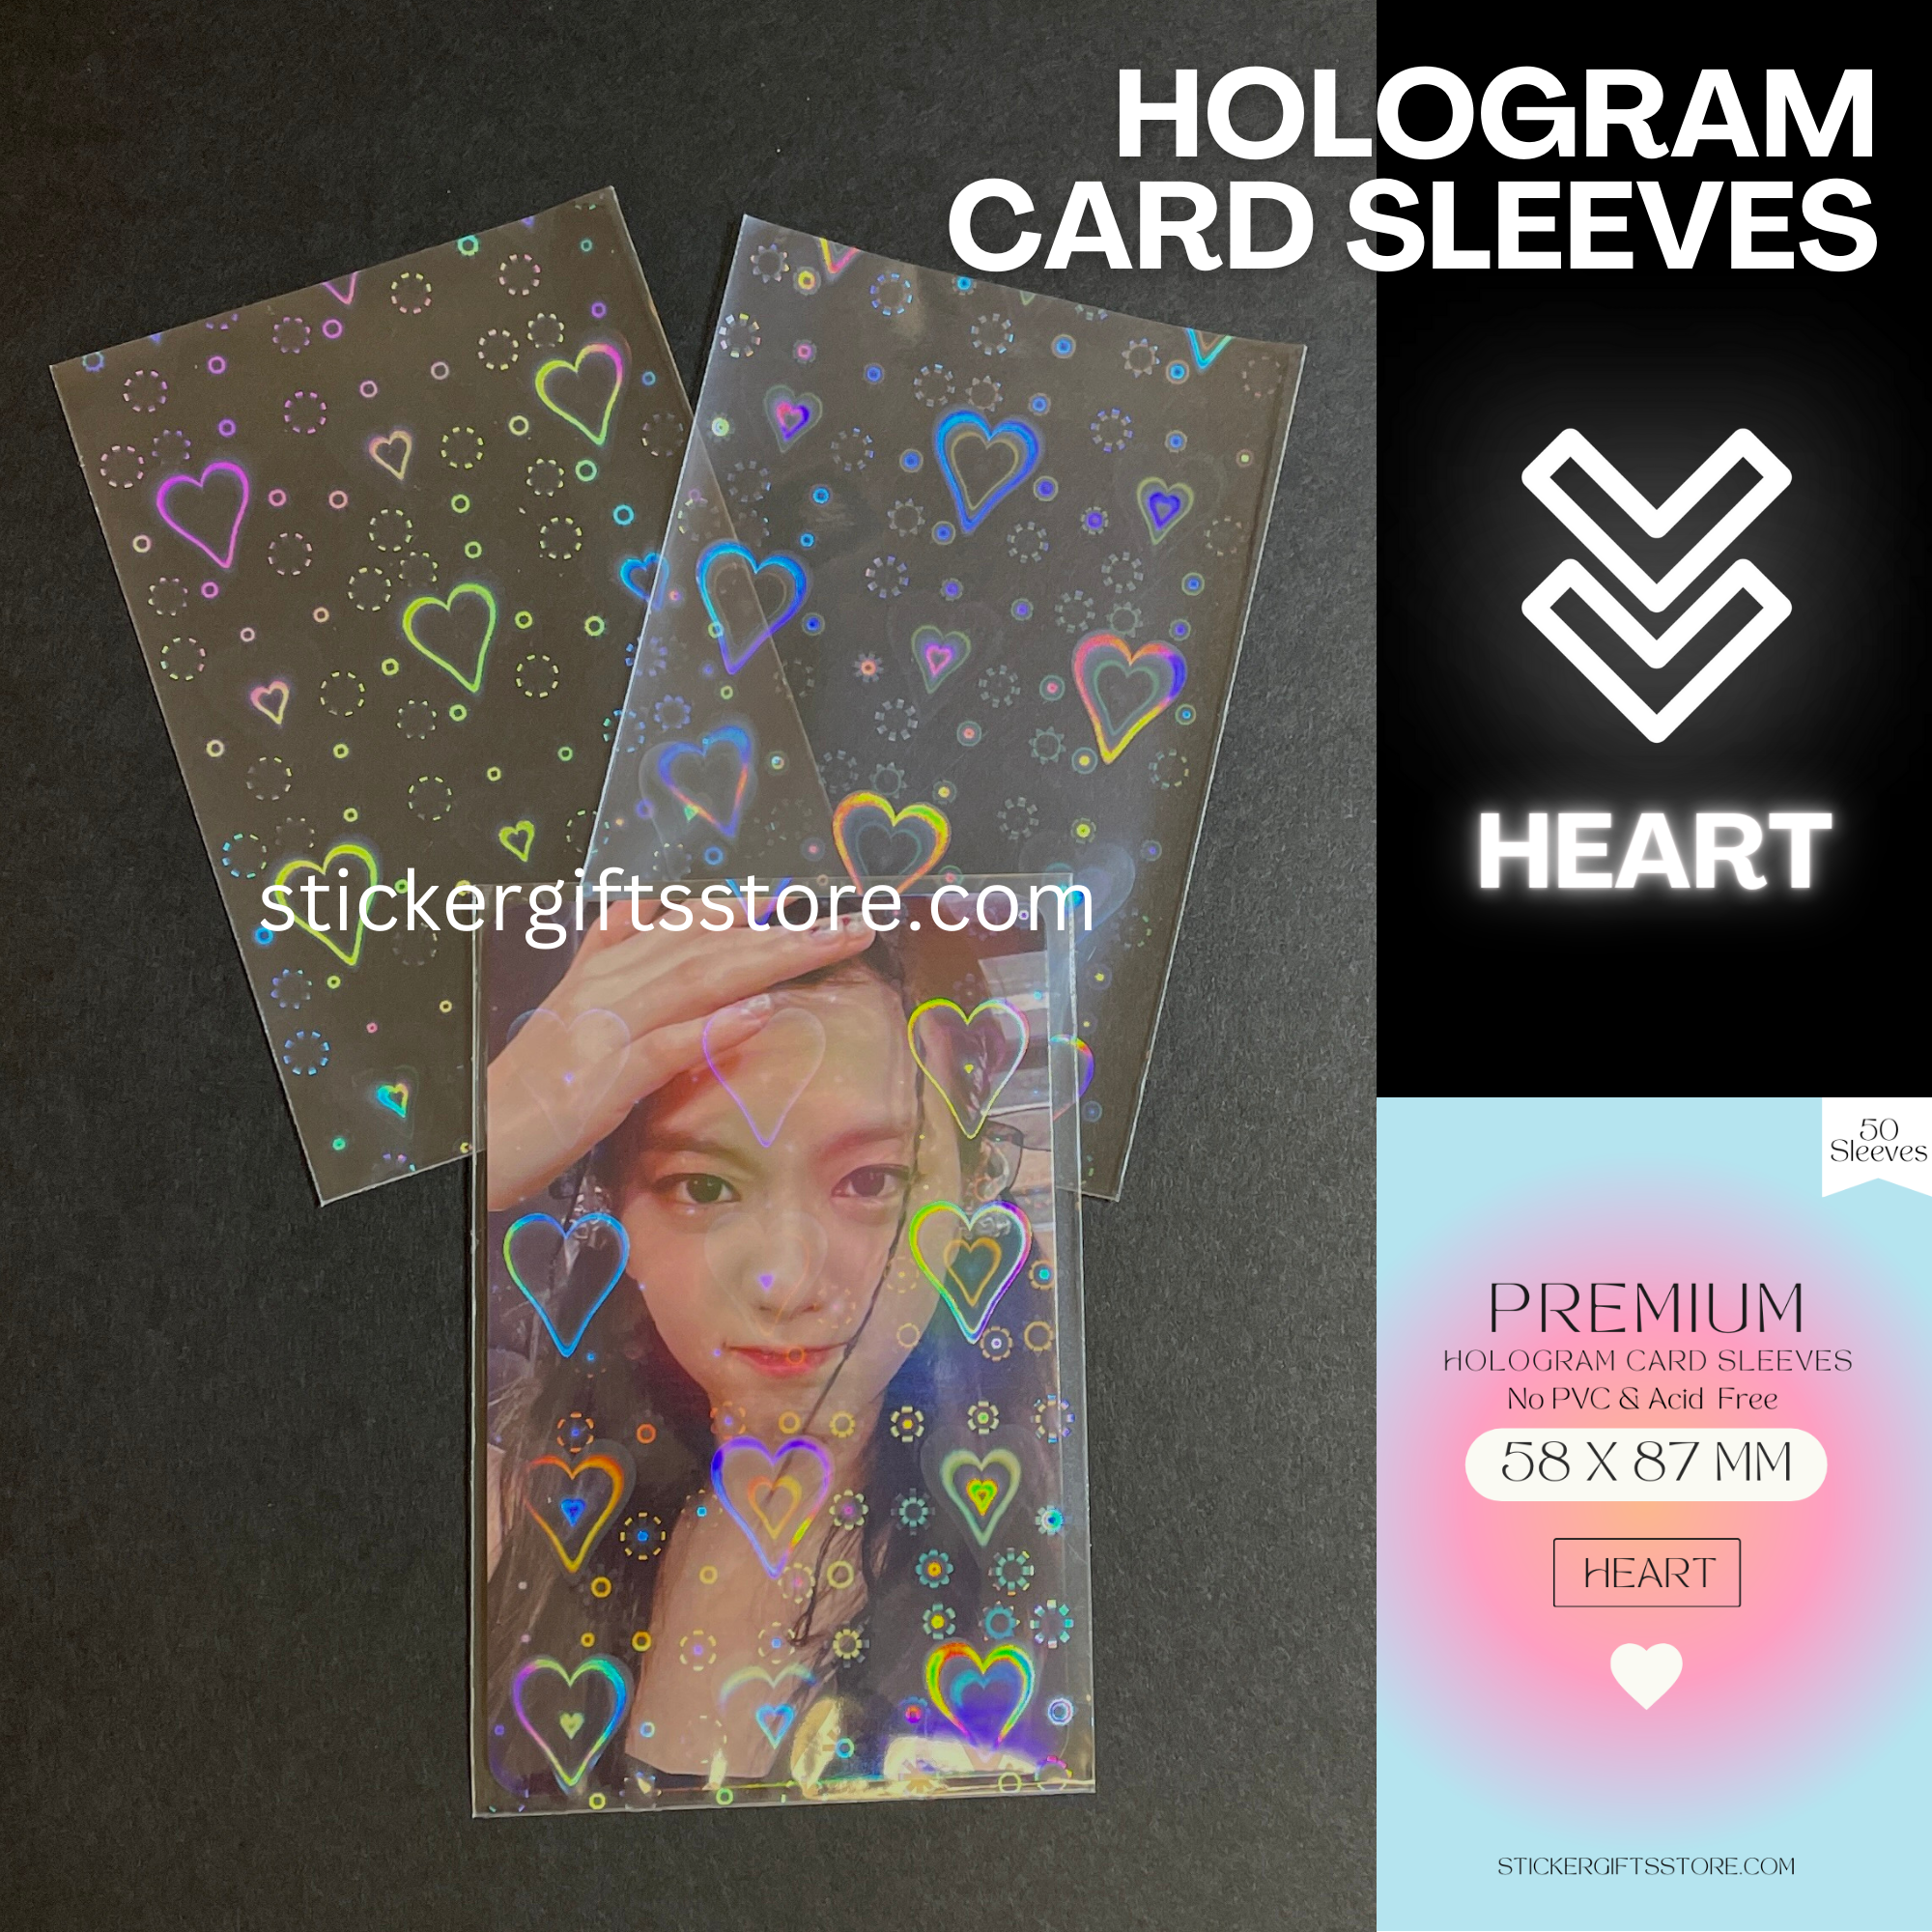 Kpop Premium Card Sleeves/ Kpop Photocards Sleeves No PVC & Acid Free/